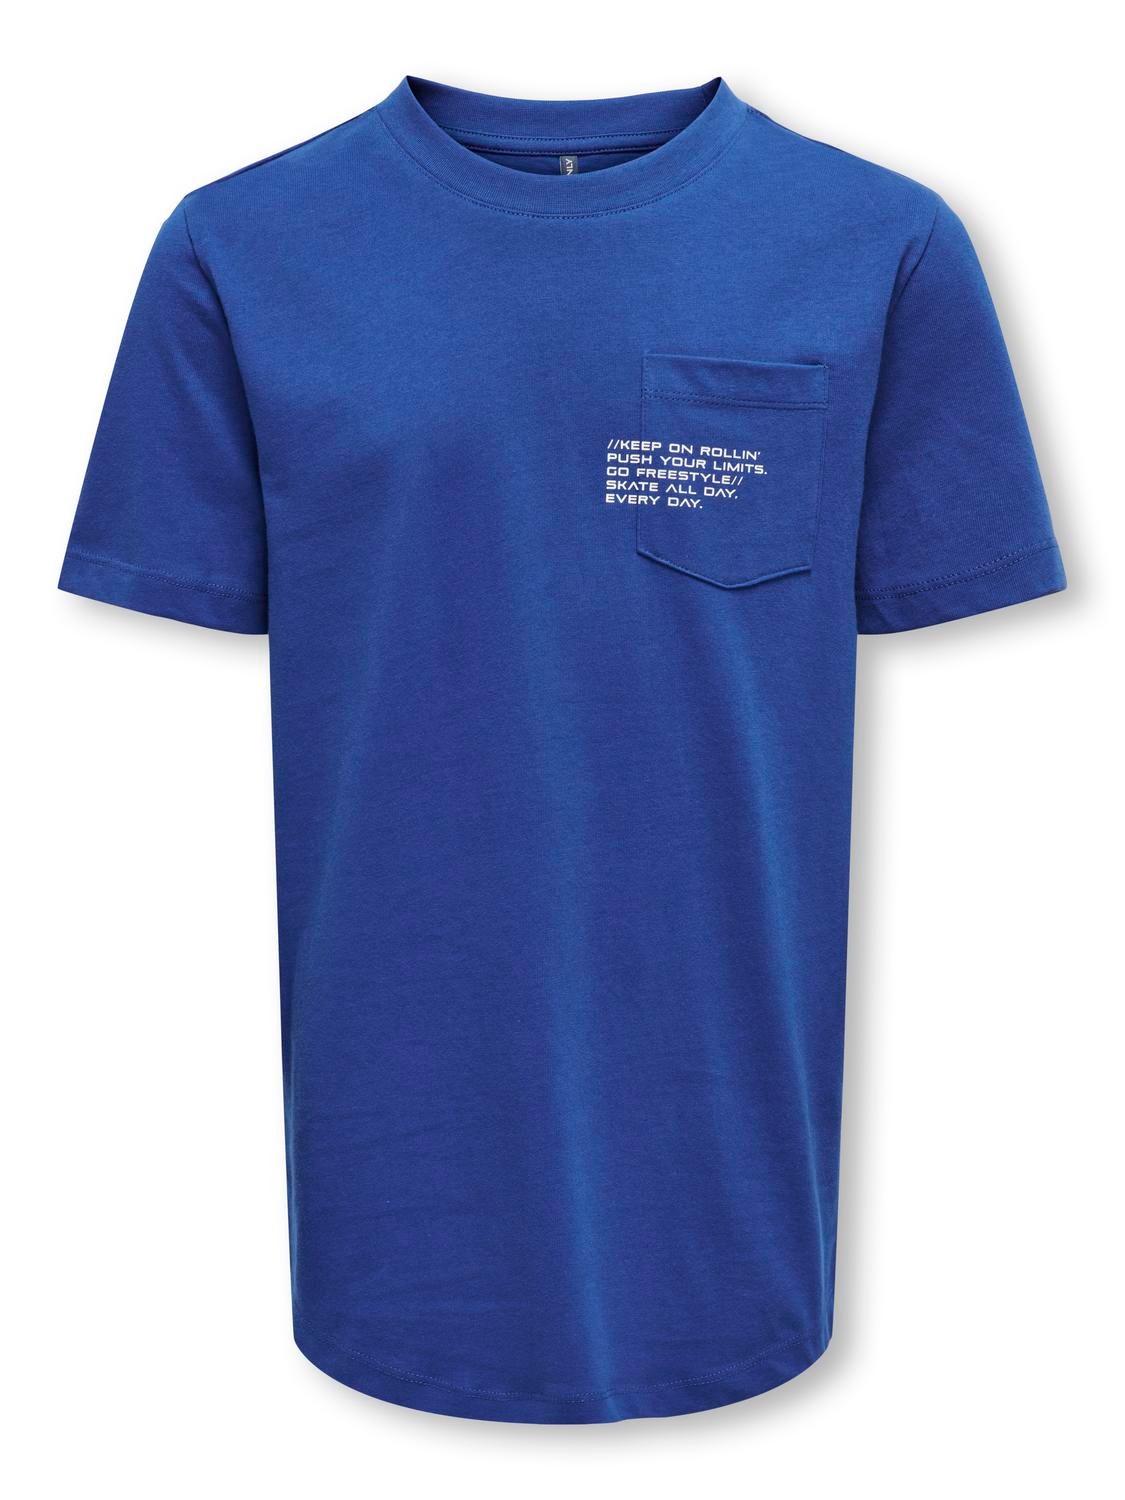 ONLY o-neck t-shirt -Blue Quartz - 15314128